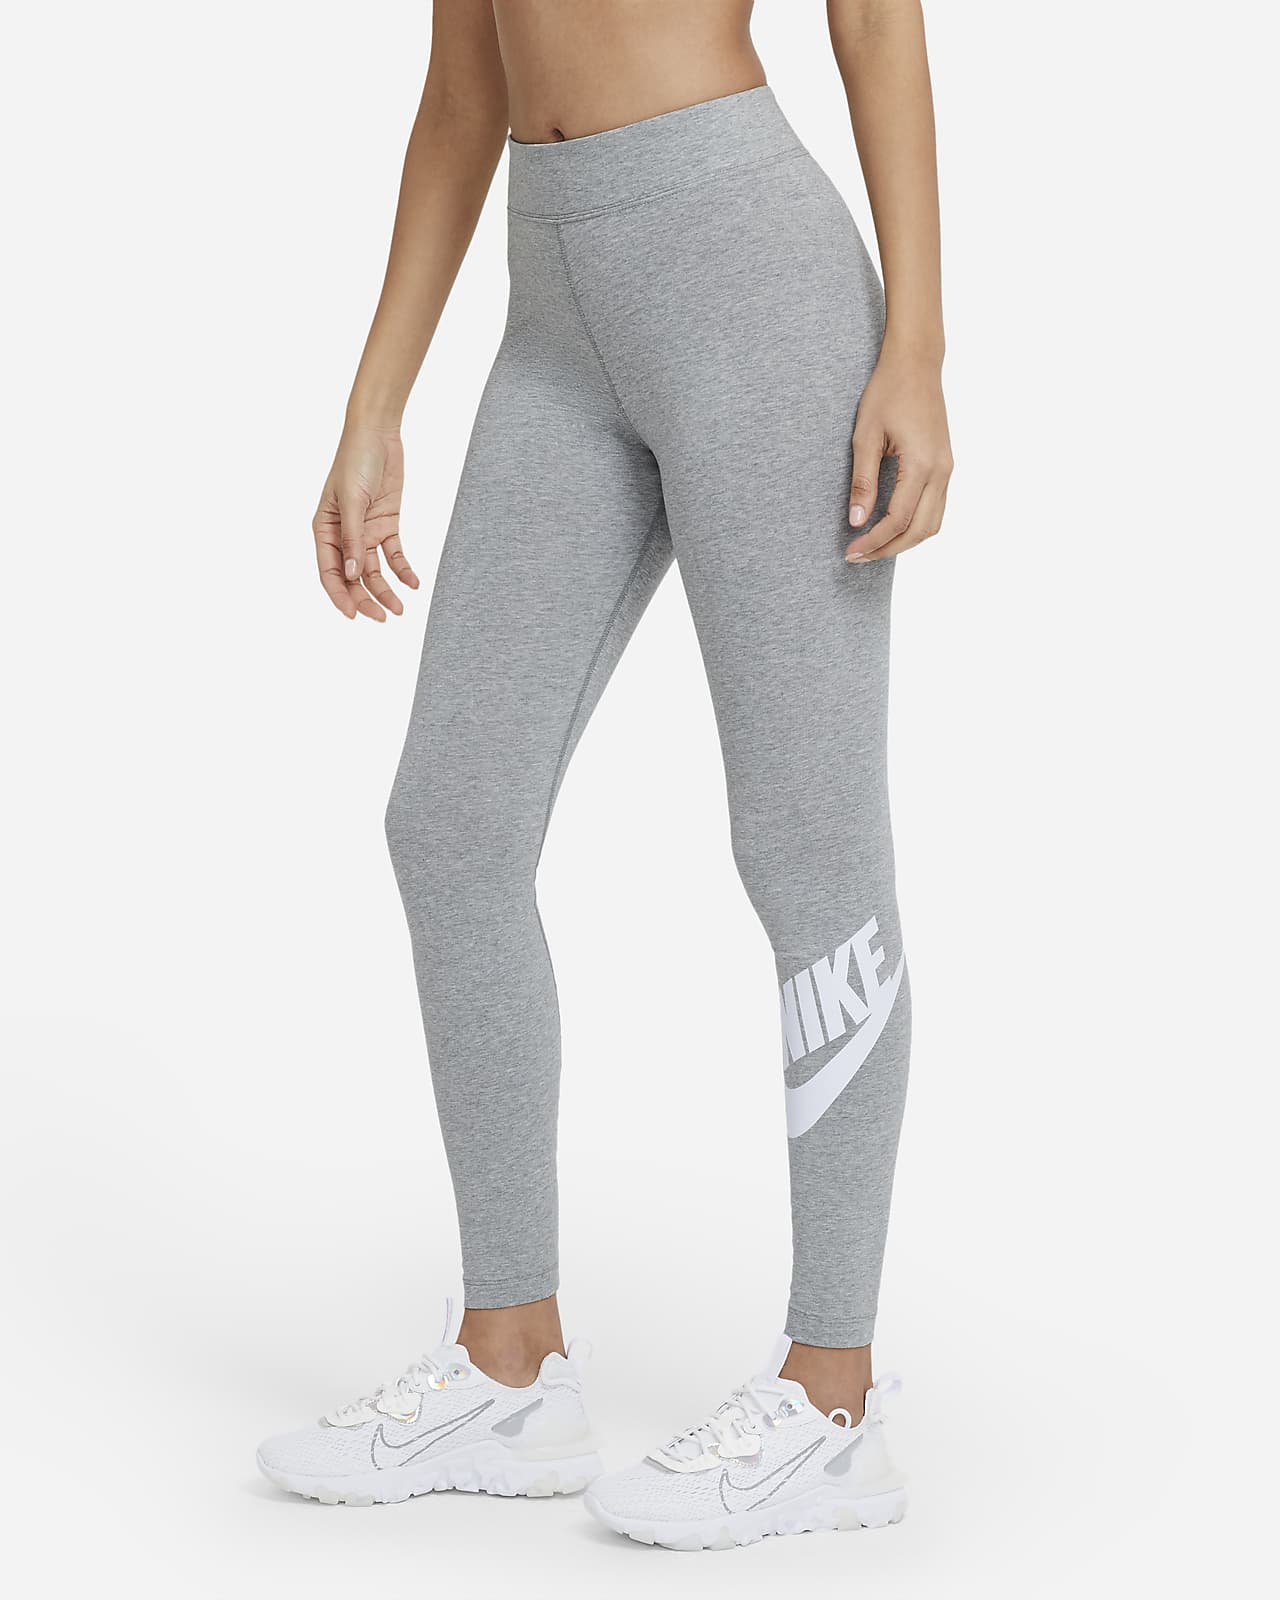  Nike - Leggings deportivos de talle alto para mujer